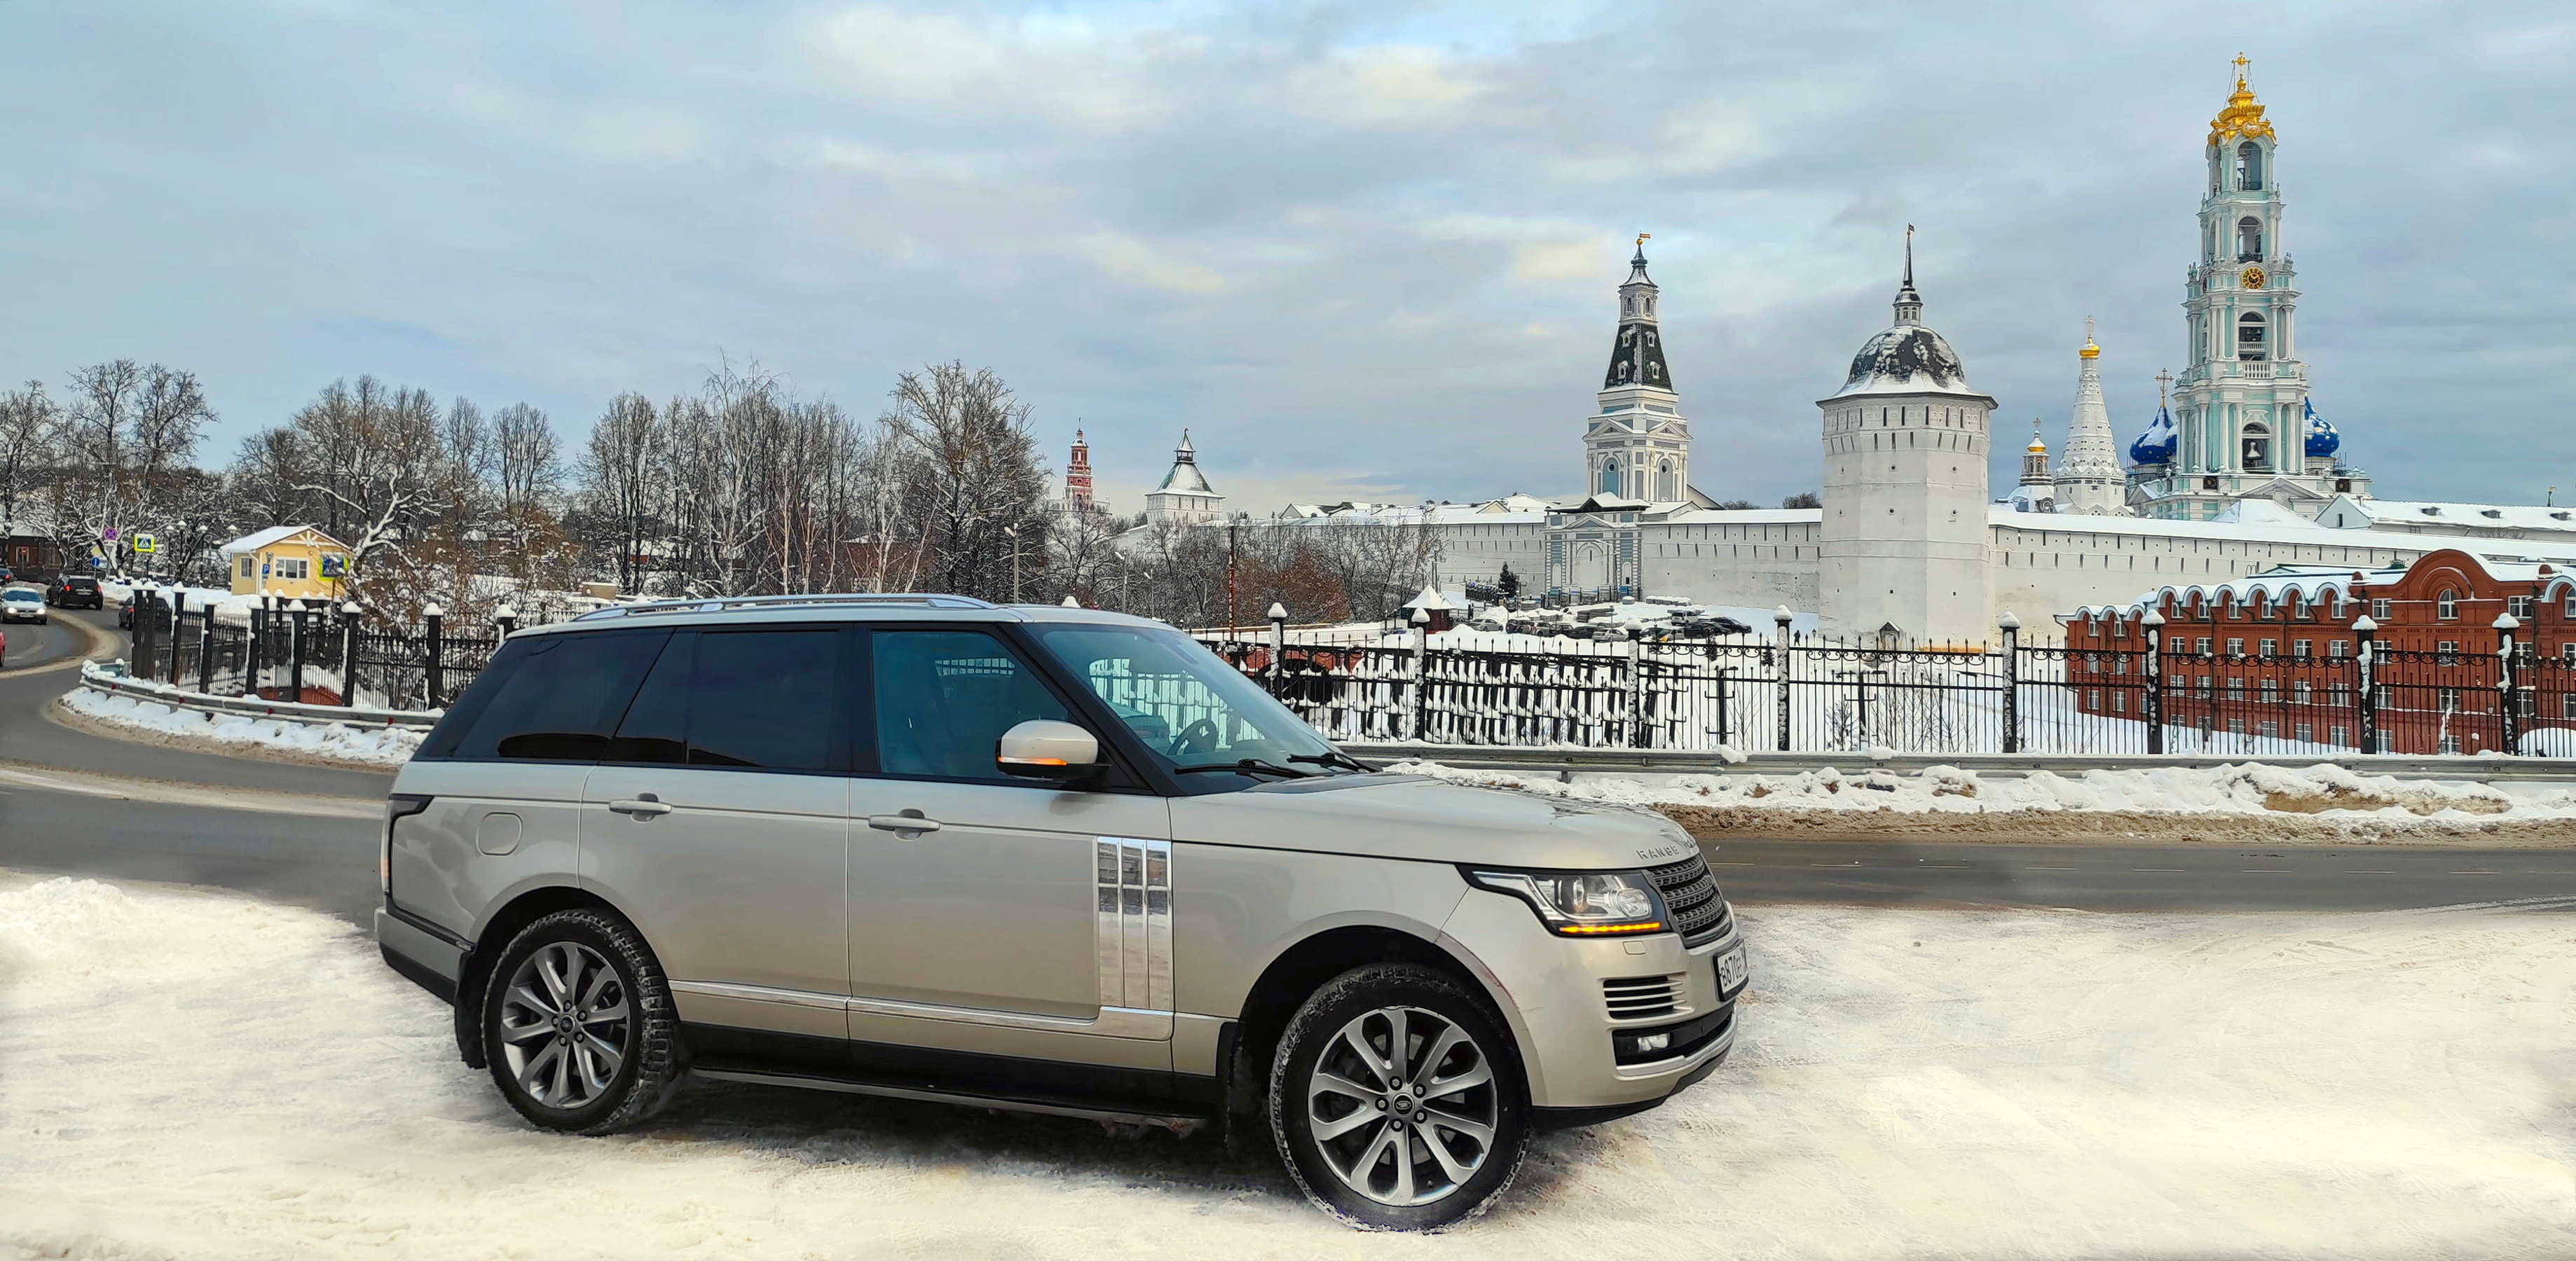 Зимний Посад на Range Rover с прозрачной крышей + чай и глинтвейн